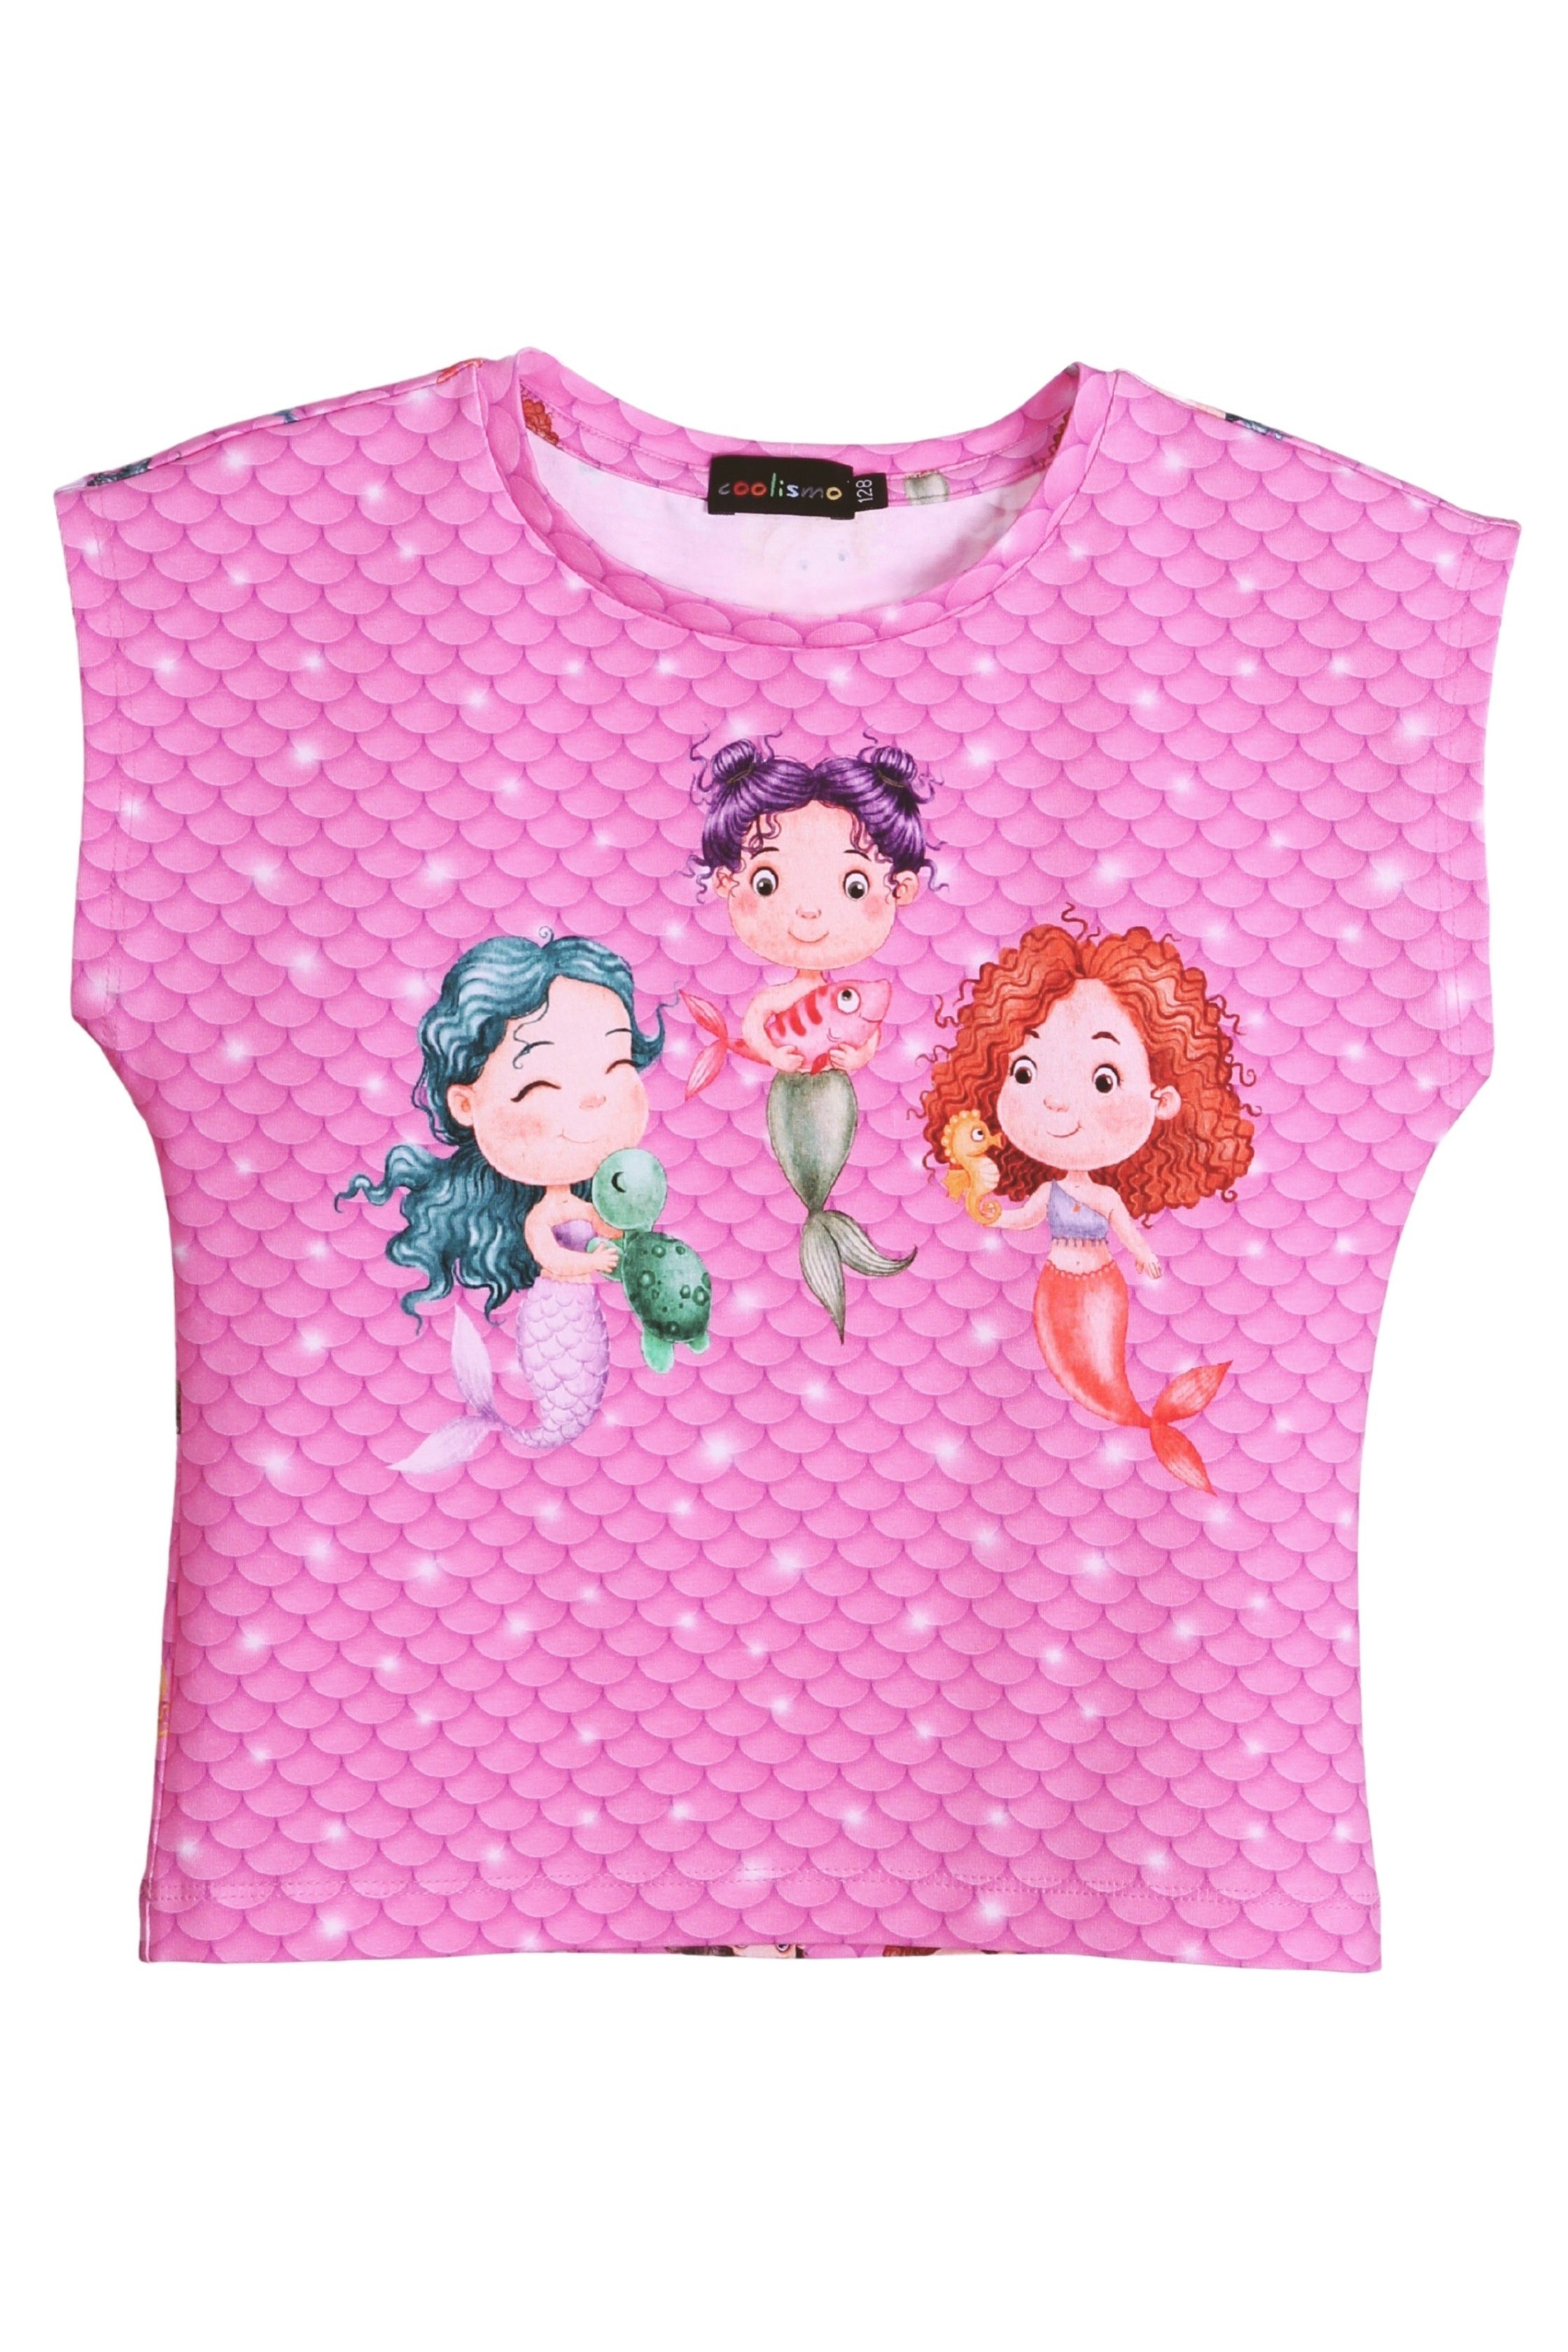 coolismo europäische Print-Shirt für Meerjungfrau Mädchen Produktion Baumwolle, T-Shirt Motiv